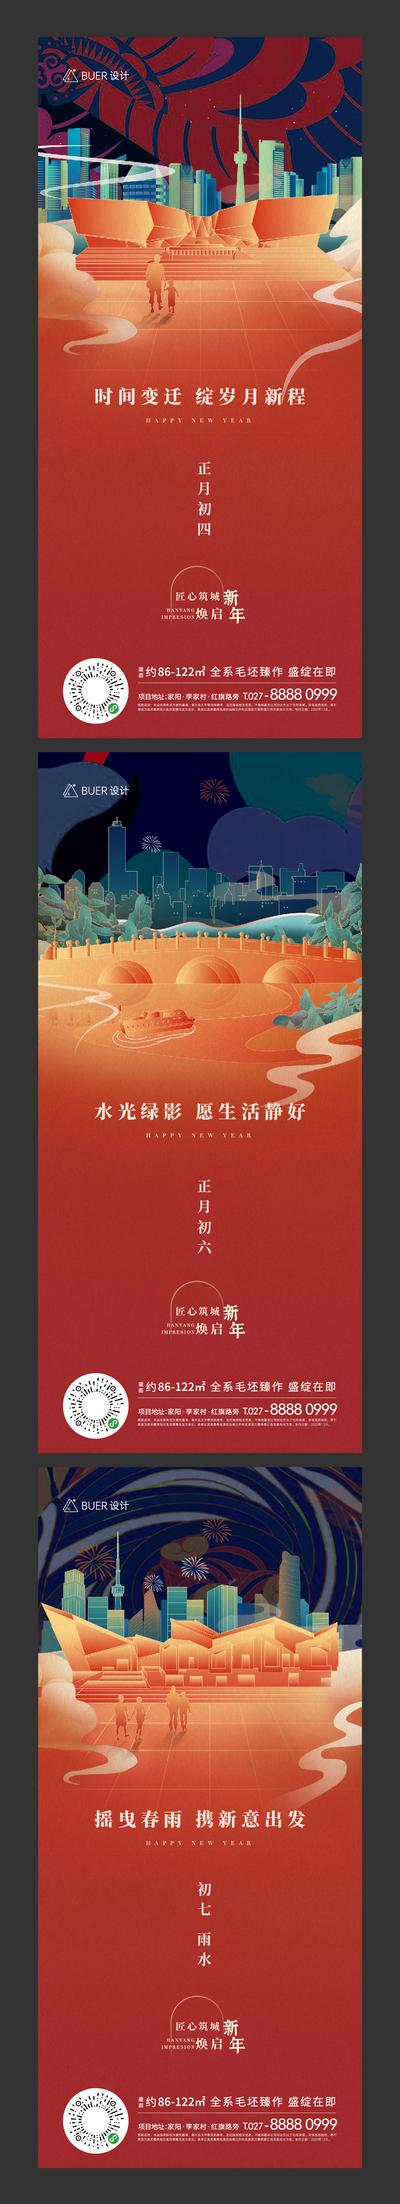 南门网 海报 中国传统节日 新年 除夕 博物馆 地标 线稿 矢量 城市 插画 纹理 中国风 